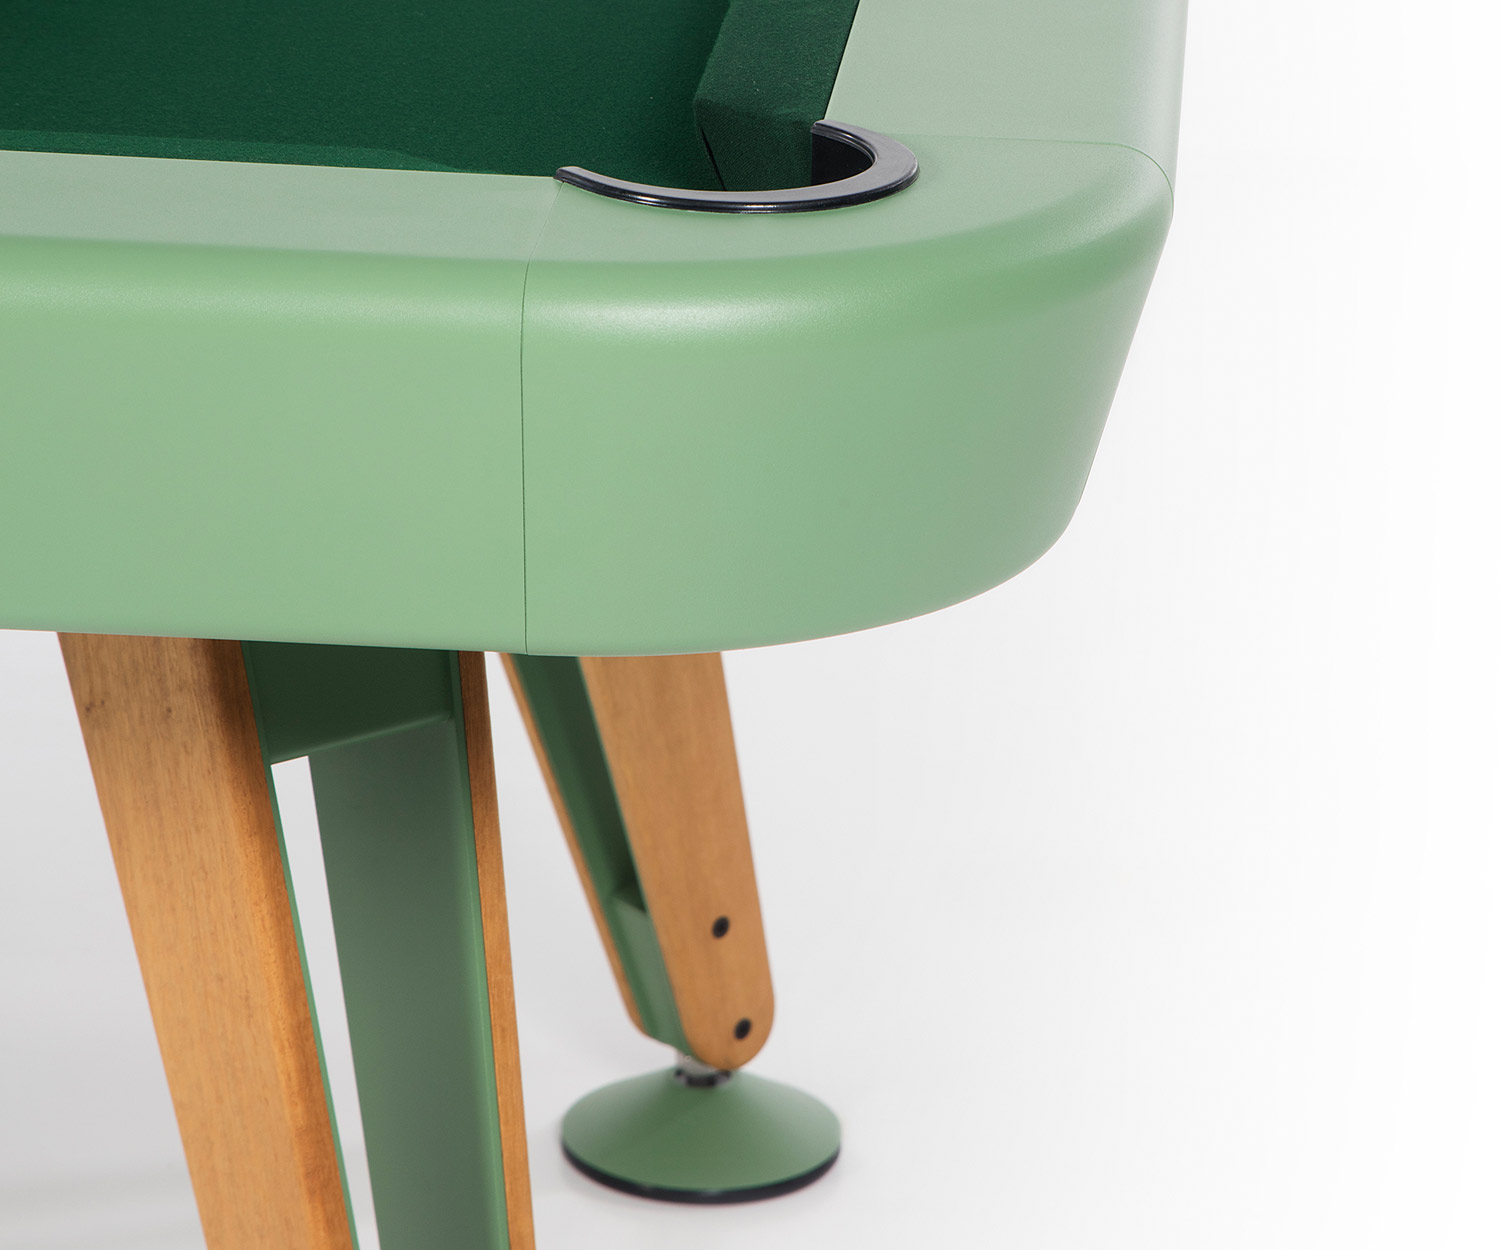 Diagonale hoekbiljarttafel van RS Barcelona in detail met stoffen bekleding en groene lakafwerking